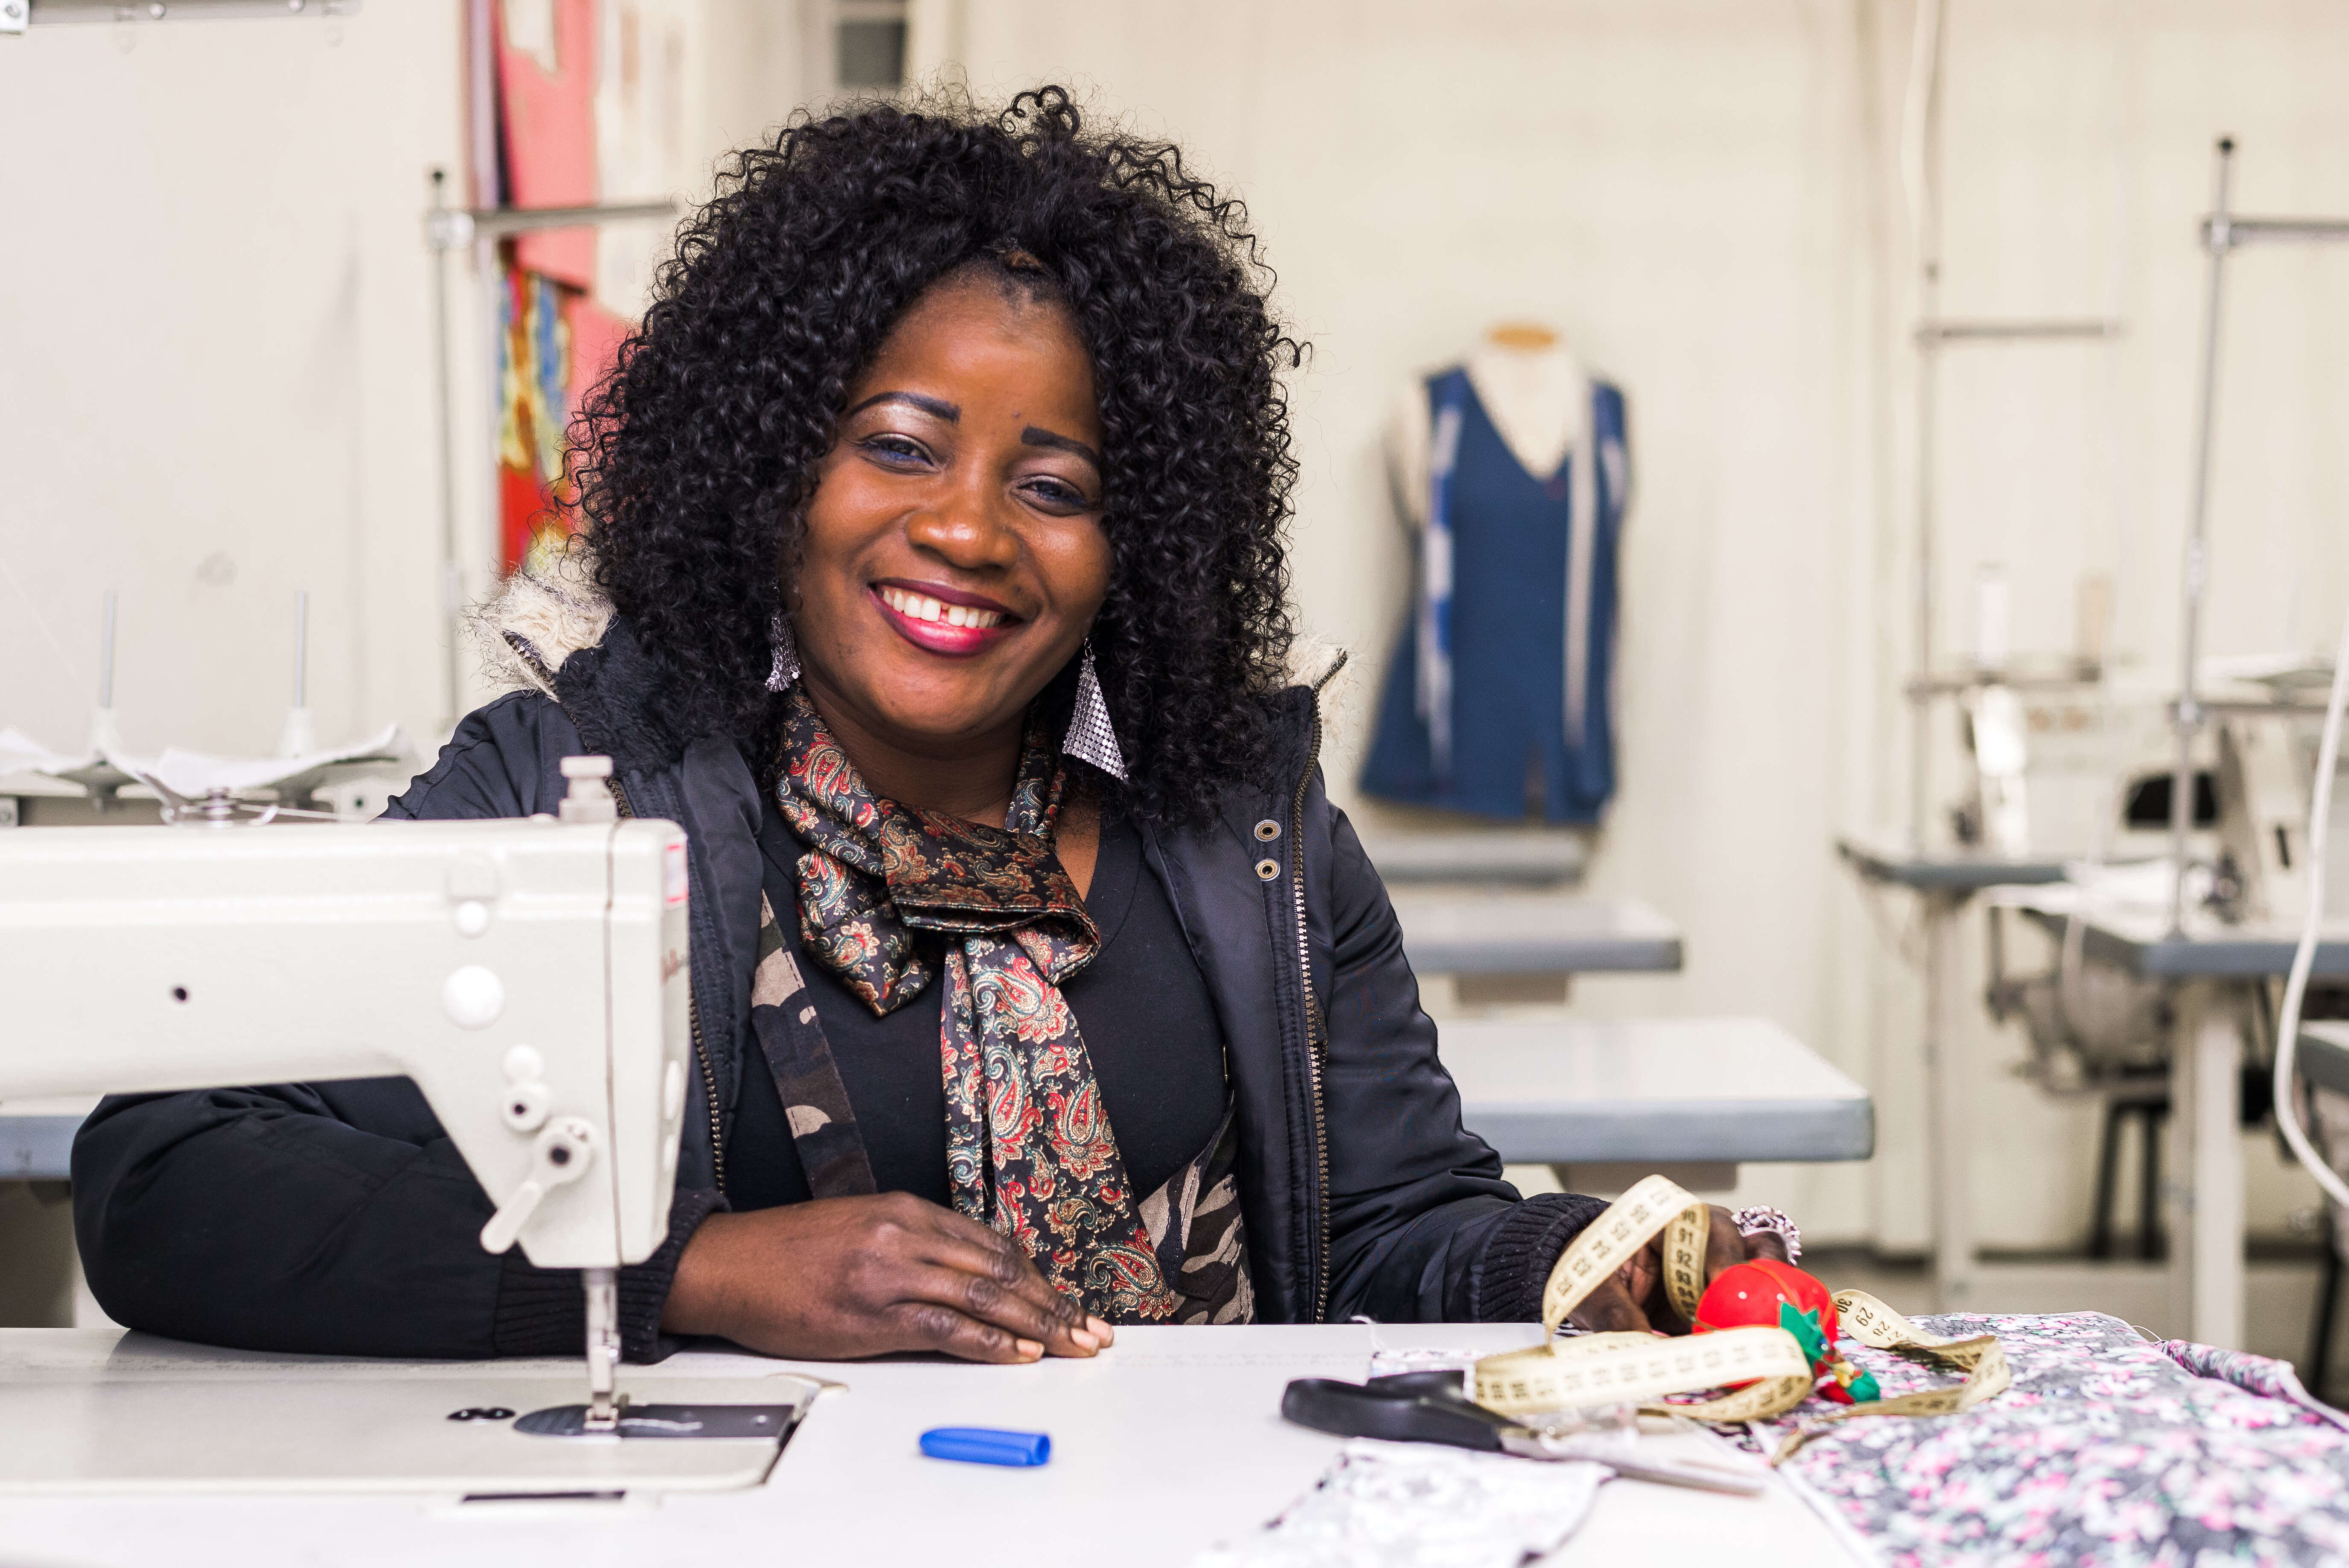 Edital Empreendedoras da Moda: conheça as organizações selecionadas para apoiar microempreendedores da área da costura